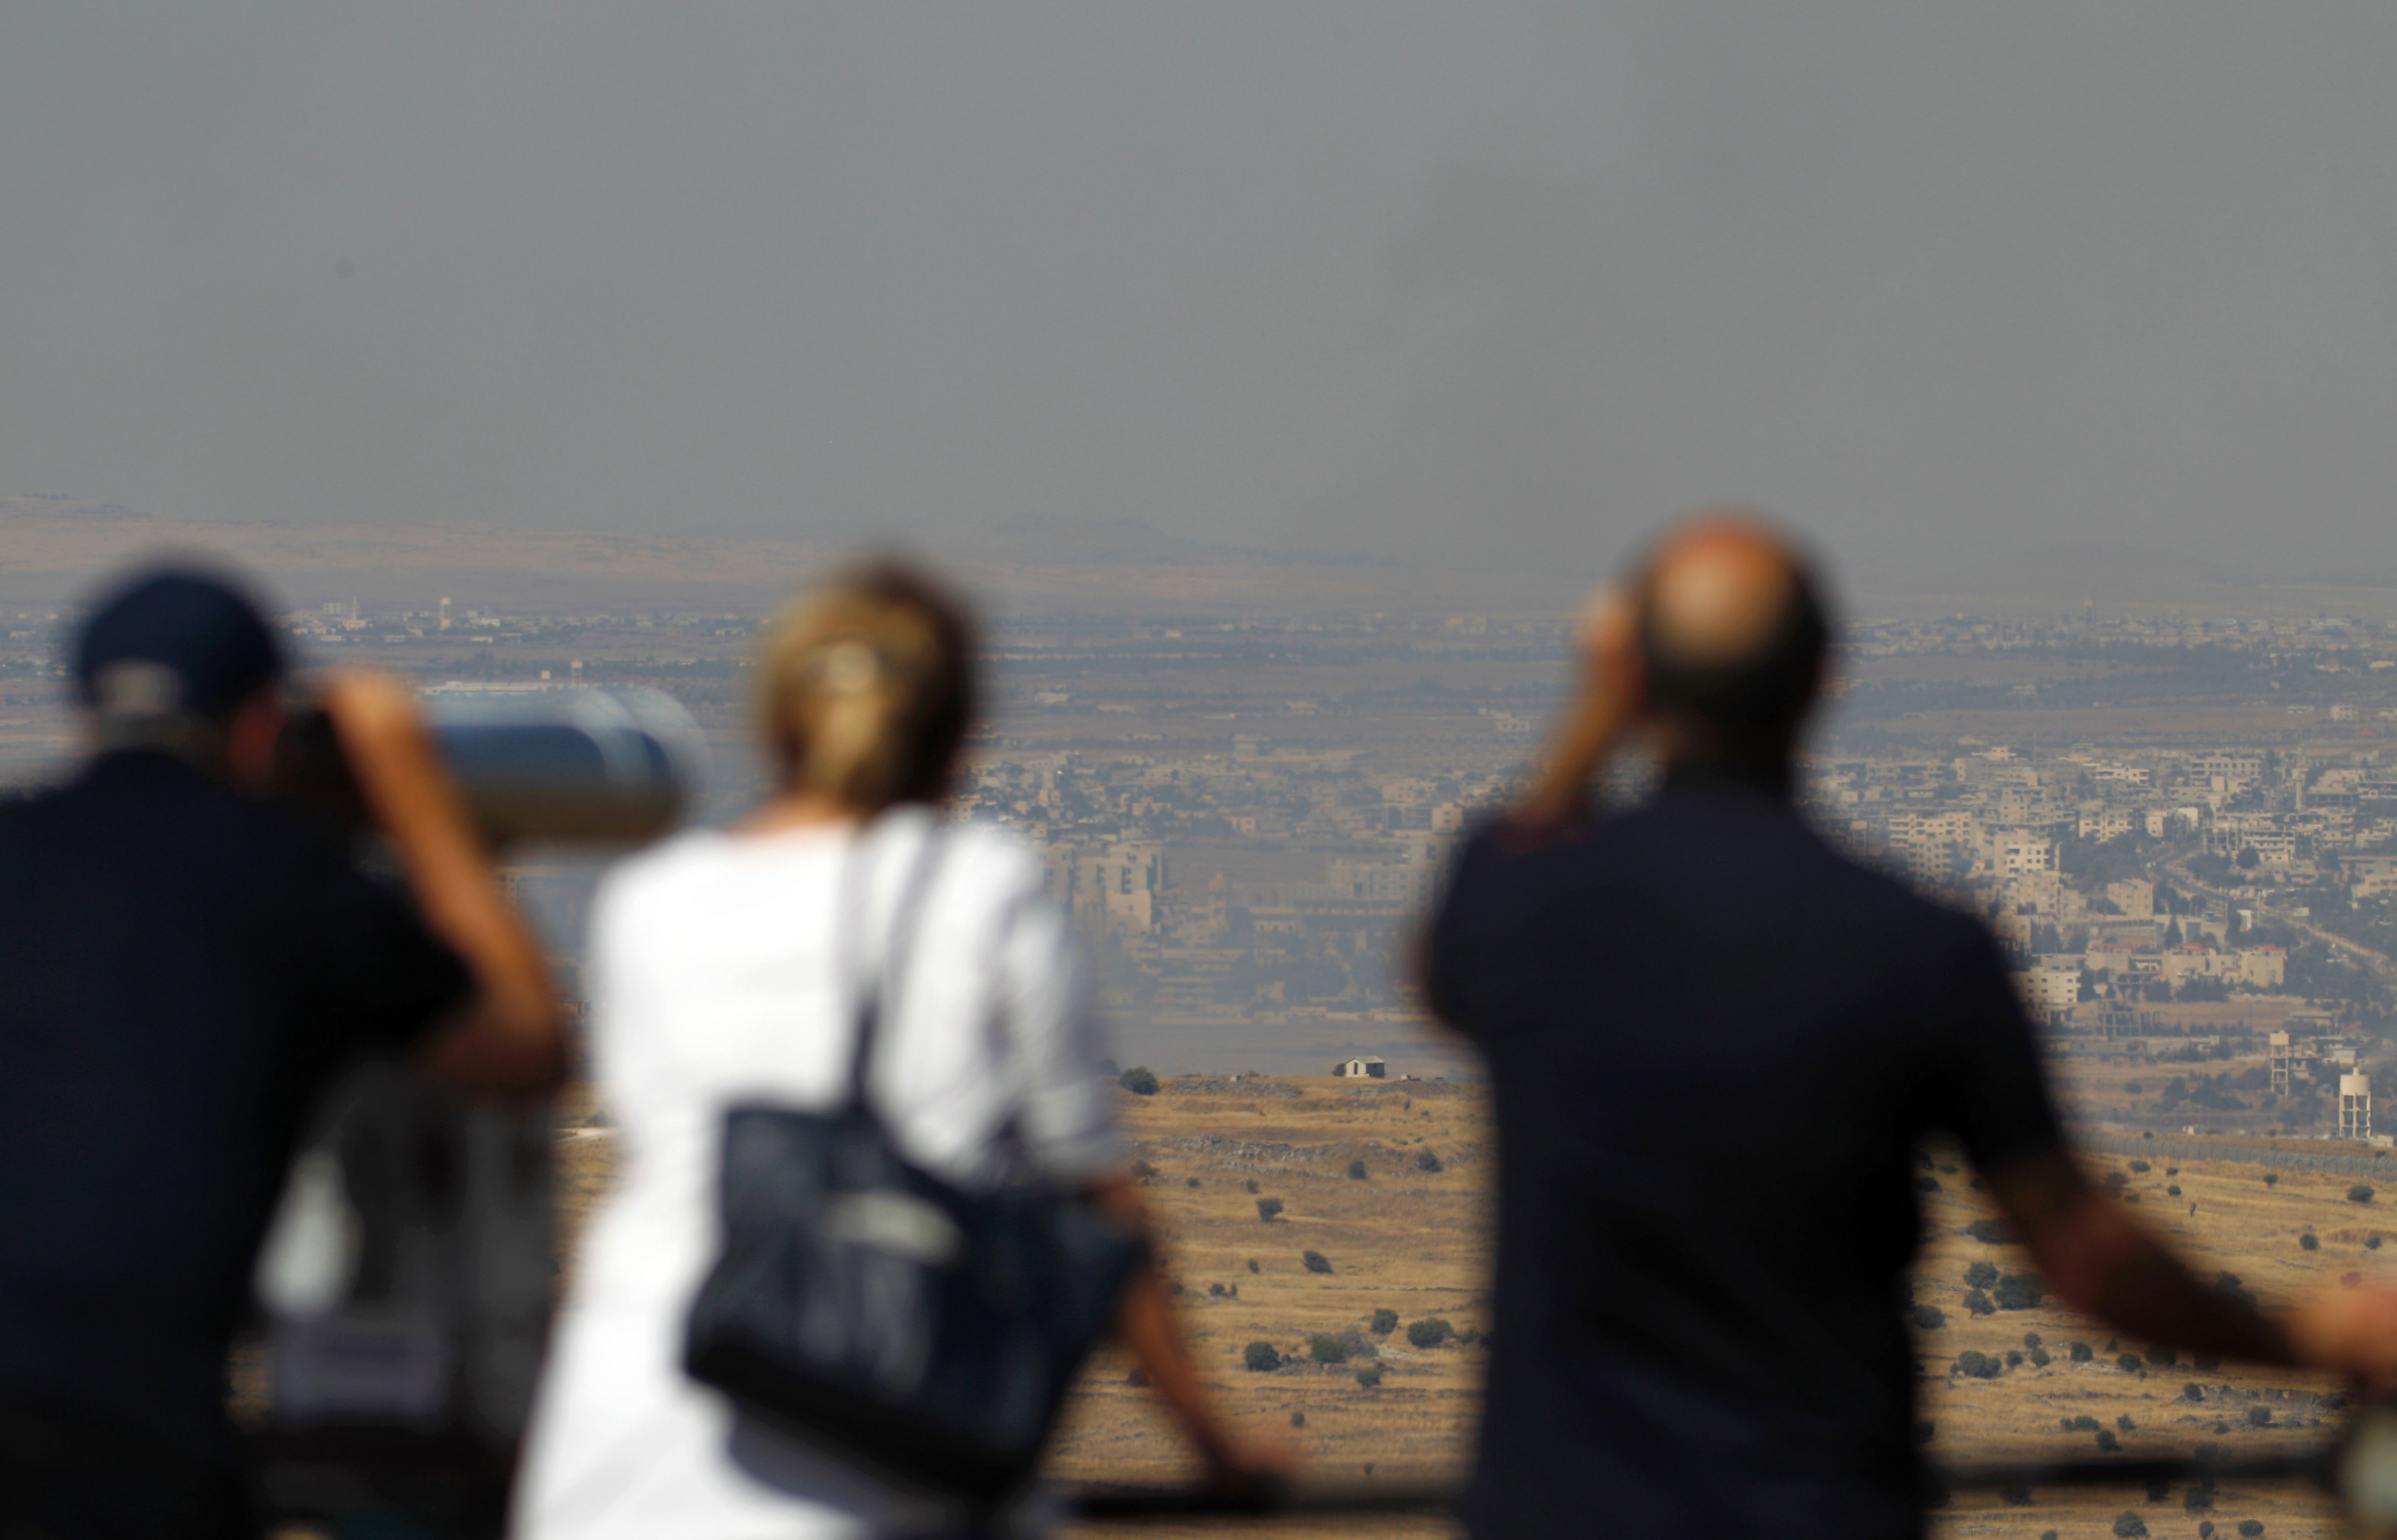 سياح إسرائيليون يتابعون قصف القوات السورية بالعدسات المكبرة